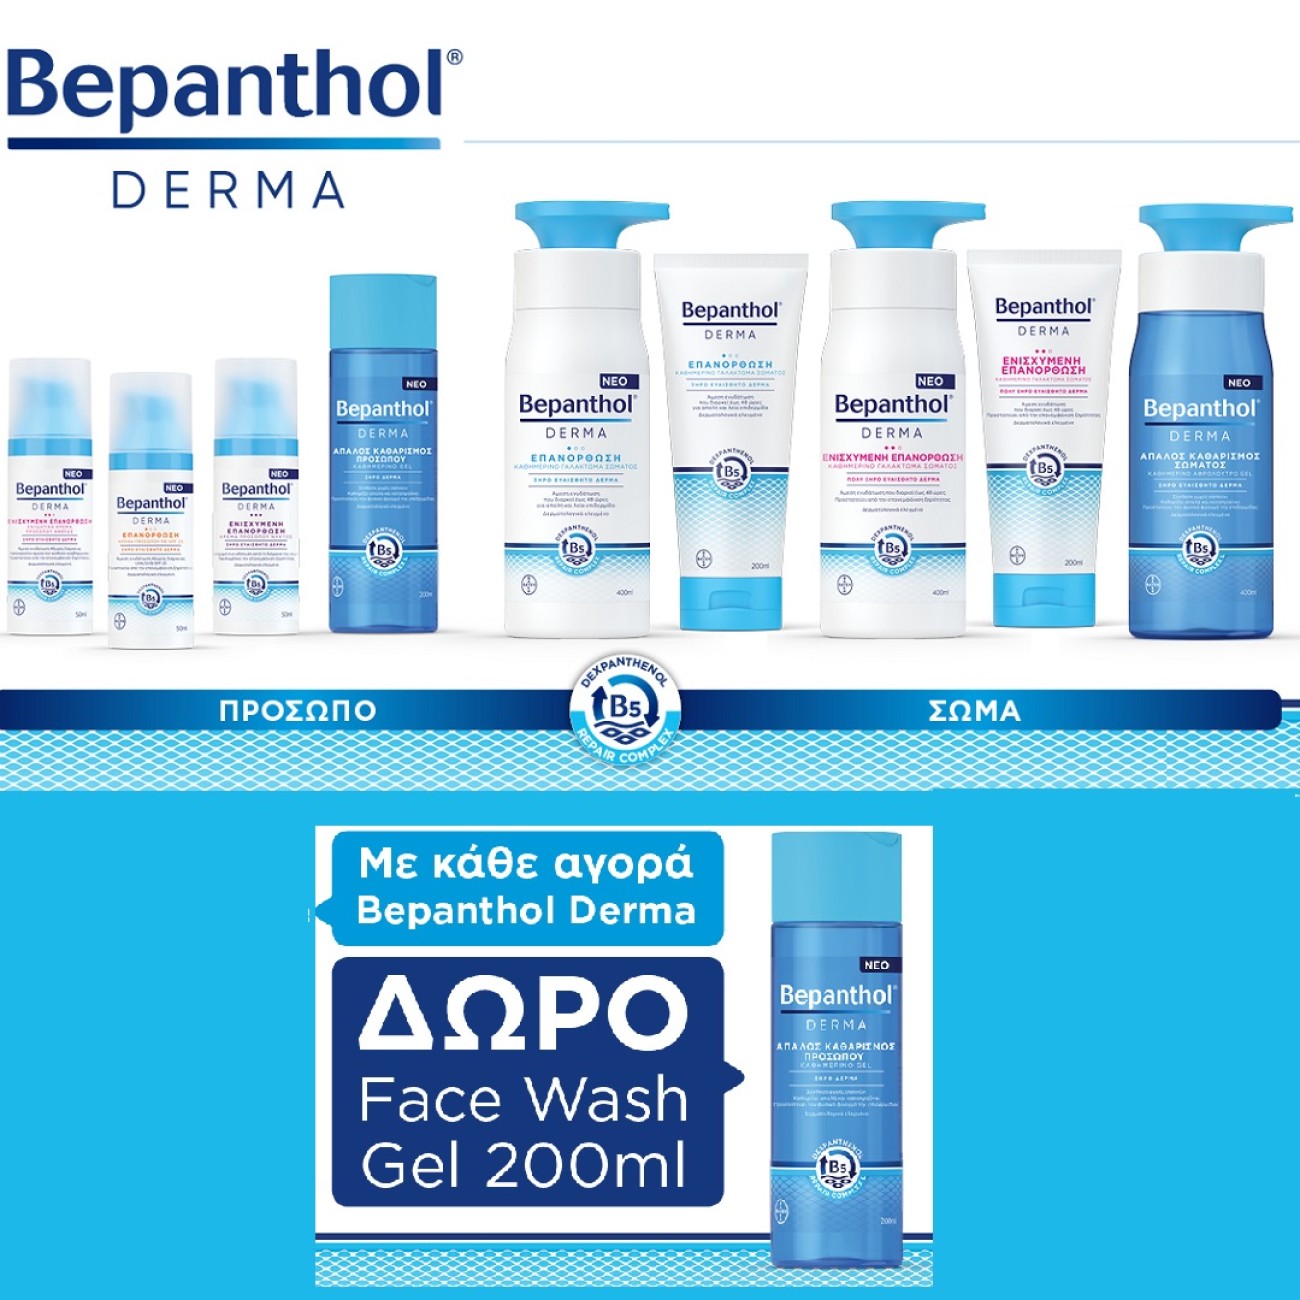 Με κάθε αγορά Bepanthol Derma ΔΩΡΟ Καθαριστικό Gel Προσώπου 200ml!